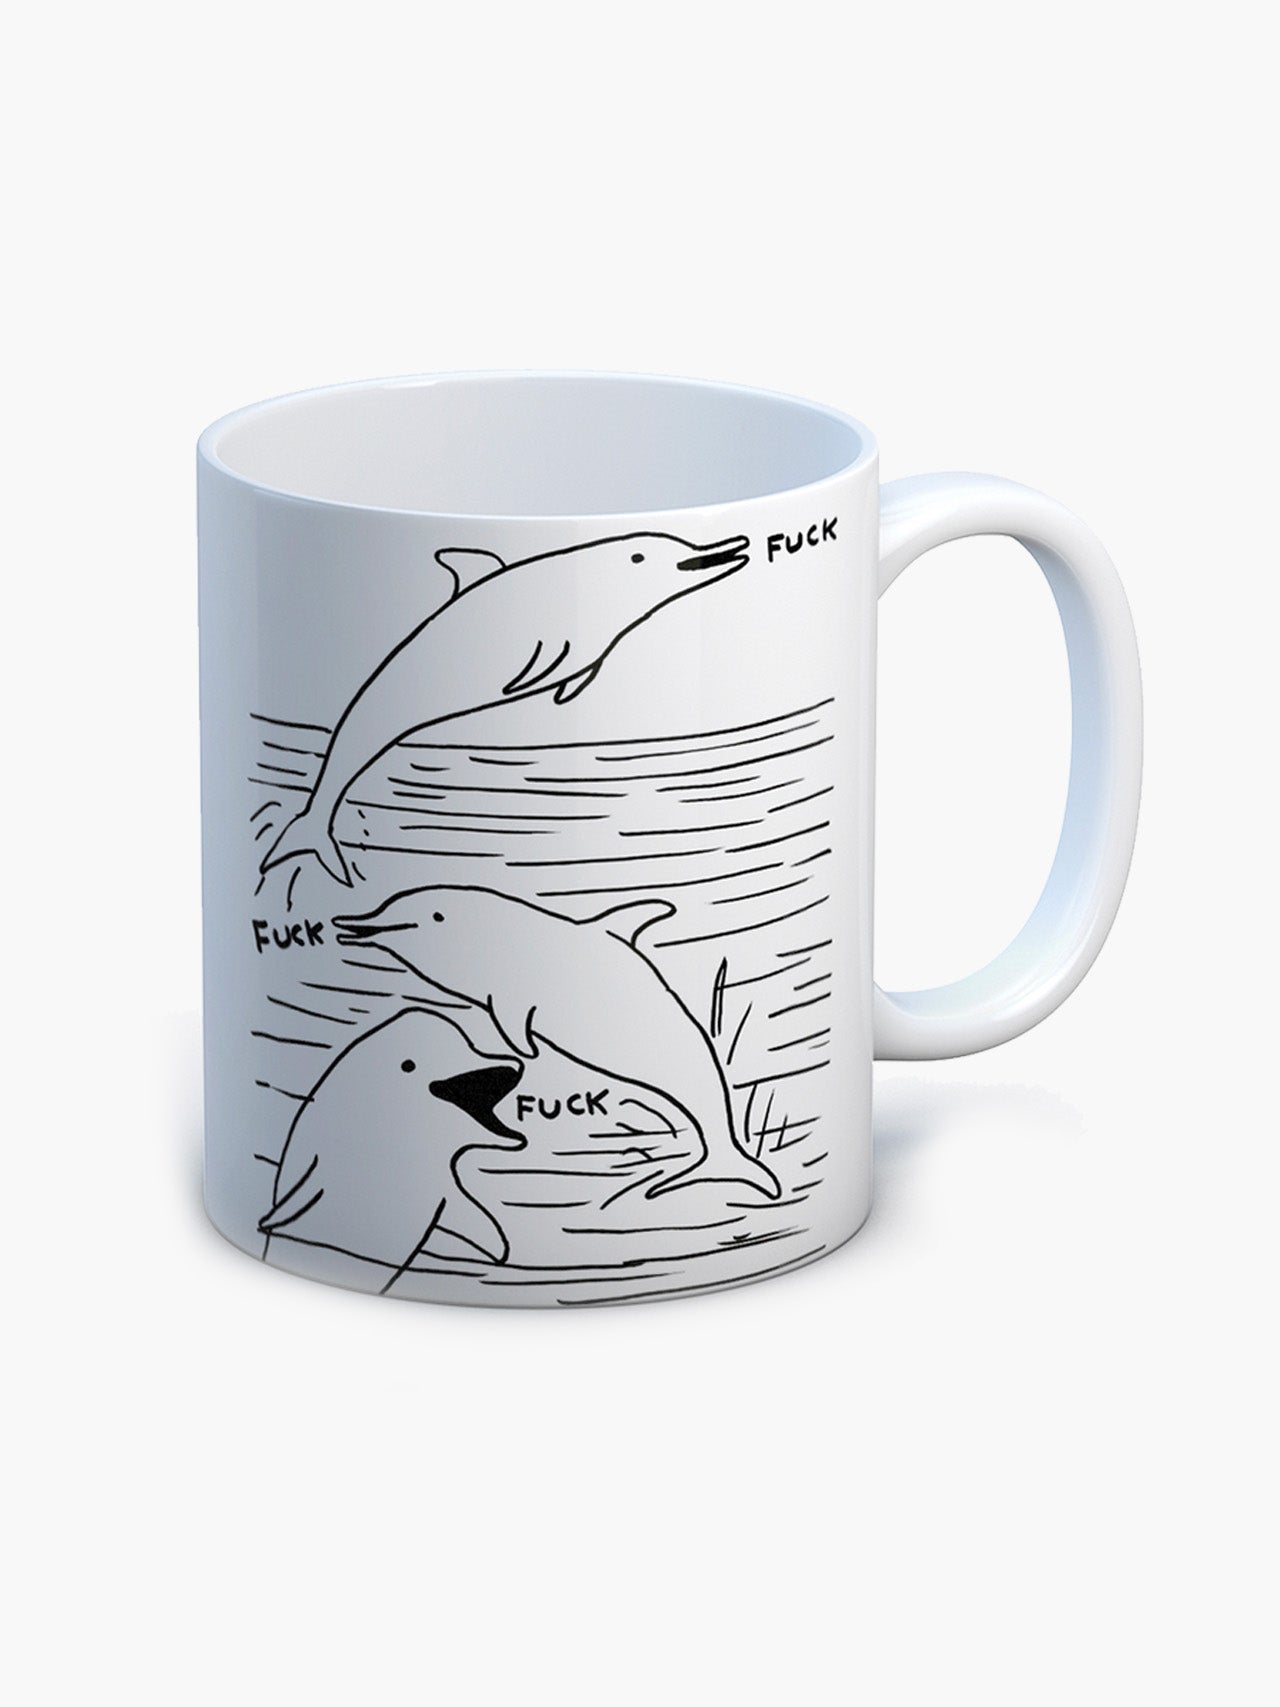 Dolphin F Mug x David Shrigley